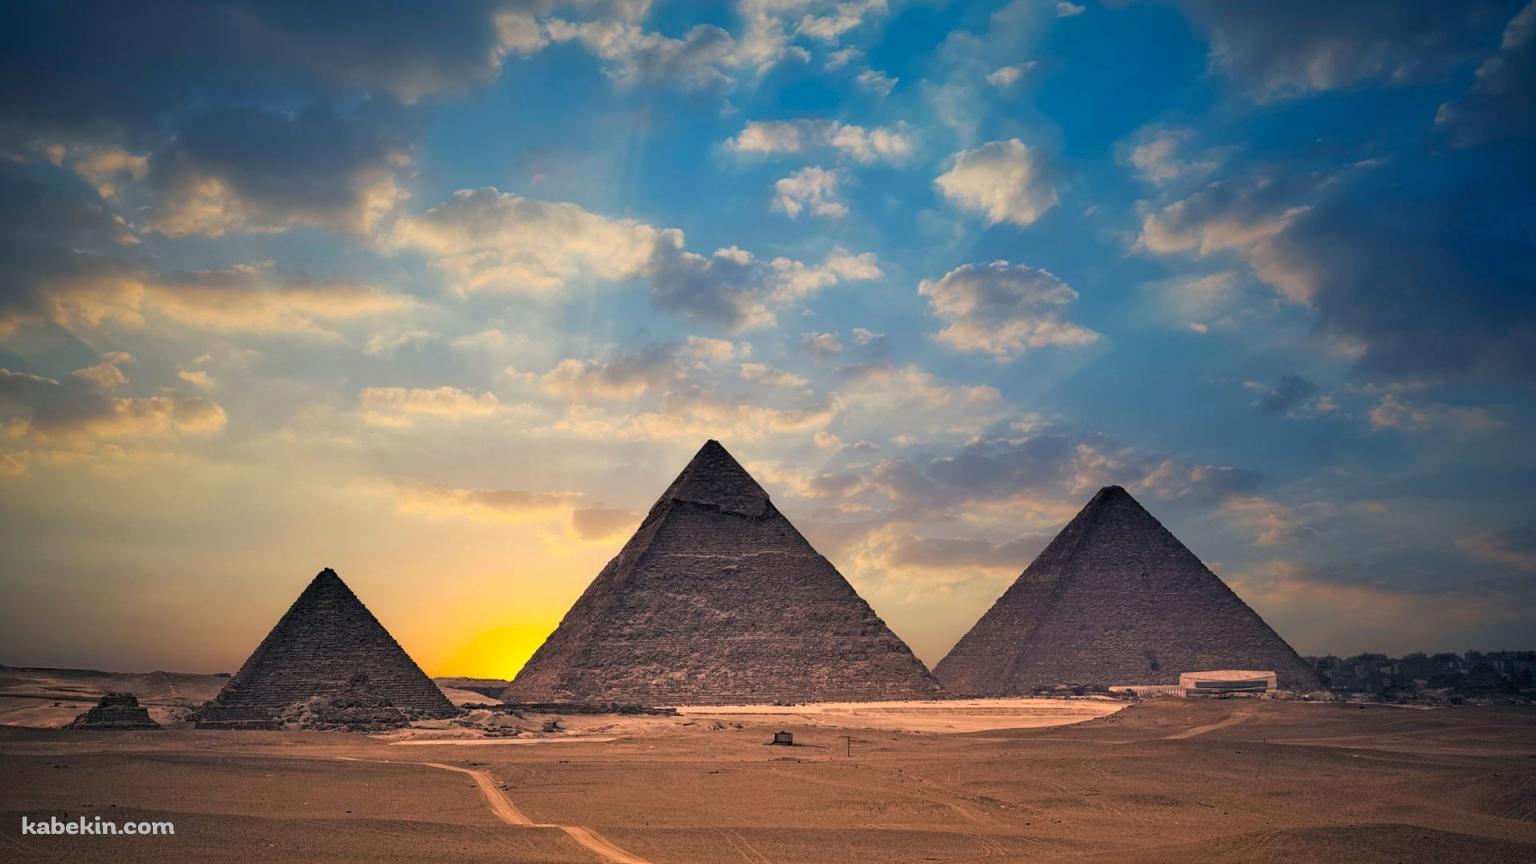 エジプトのピラミッドの壁紙(1536px x 864px) 高画質 PC・デスクトップ用